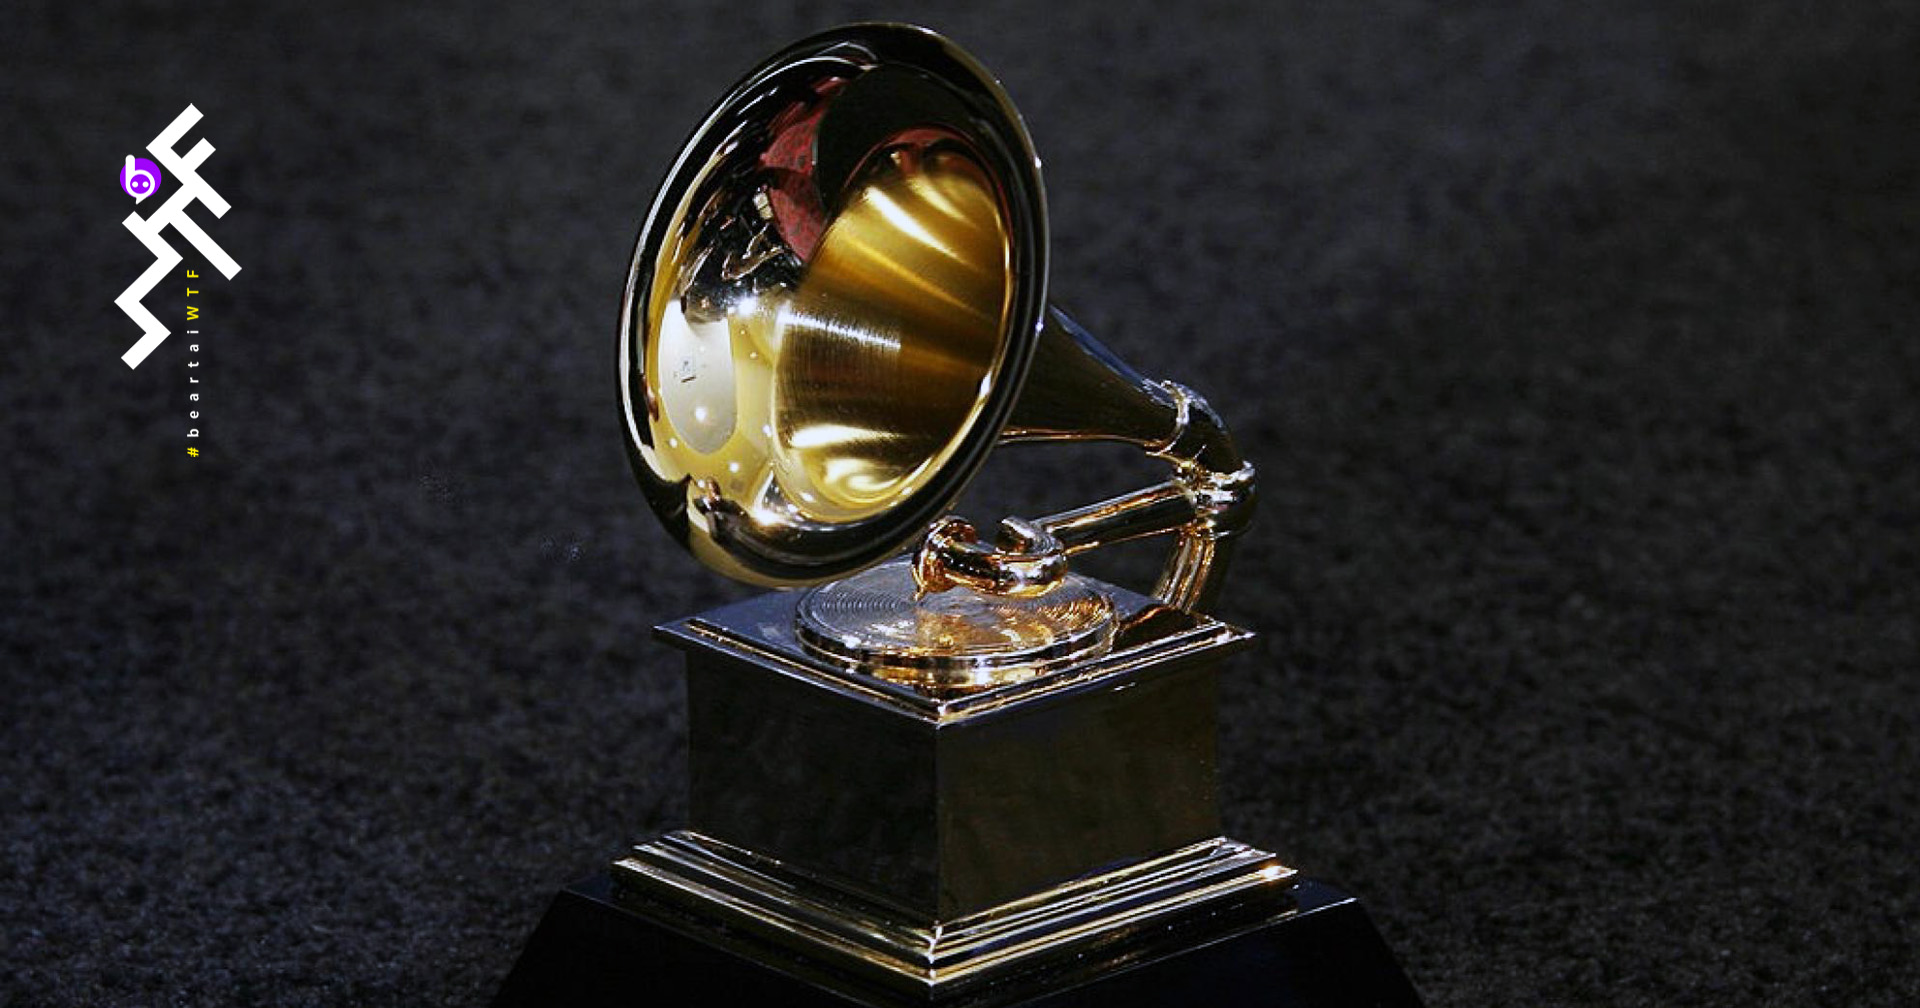 Grammy Awards ครั้งที่ 63 โดนพิษโควิด : เลื่อนไปจัด 14 มี.ค. 2021